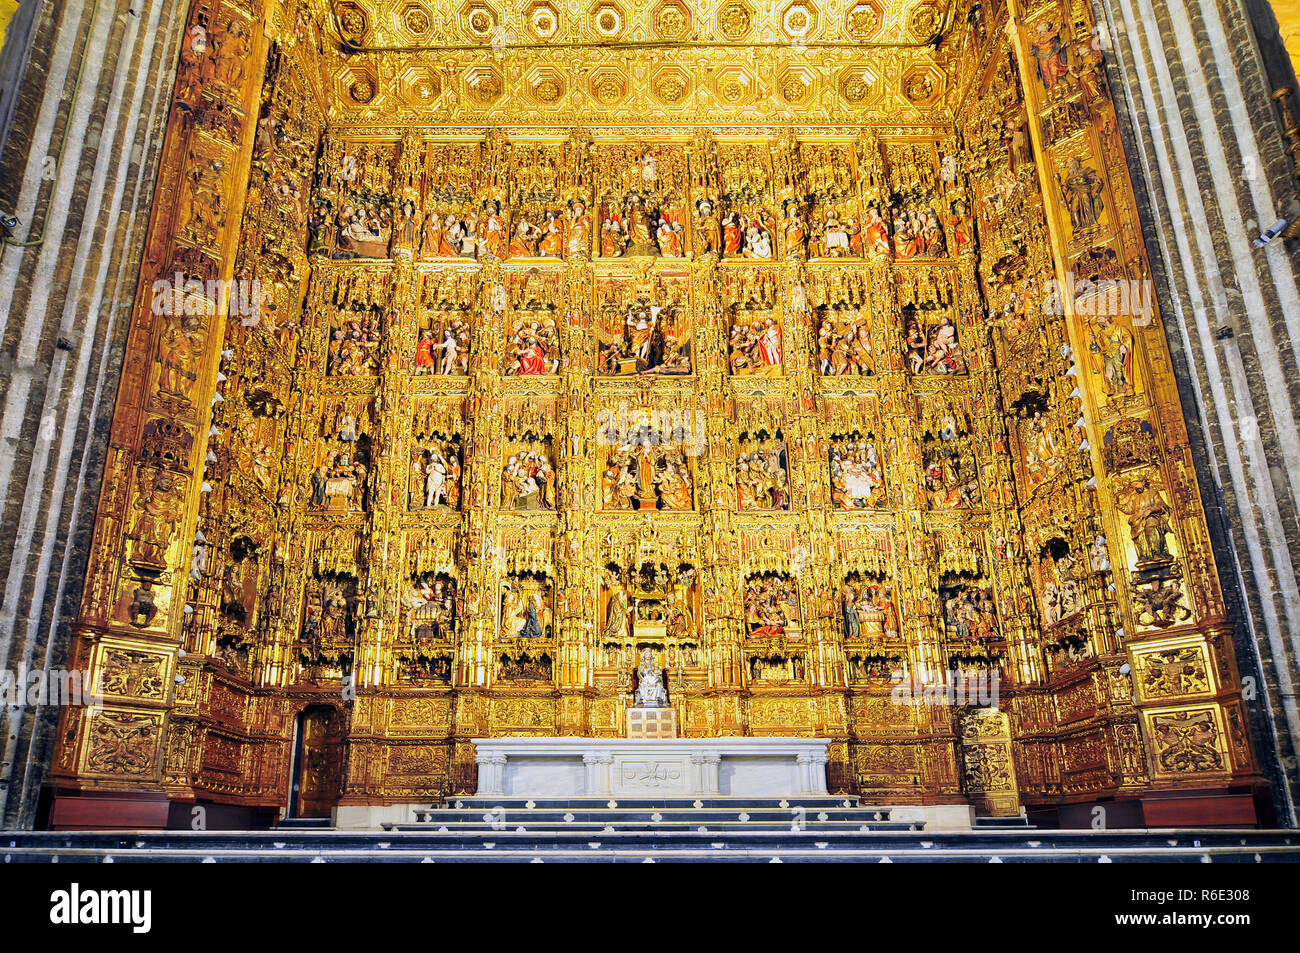 Die beeindruckenden verzierten vergoldeten Altar in der Kathedrale von Sevilla Sevilla Spanien Stockfoto